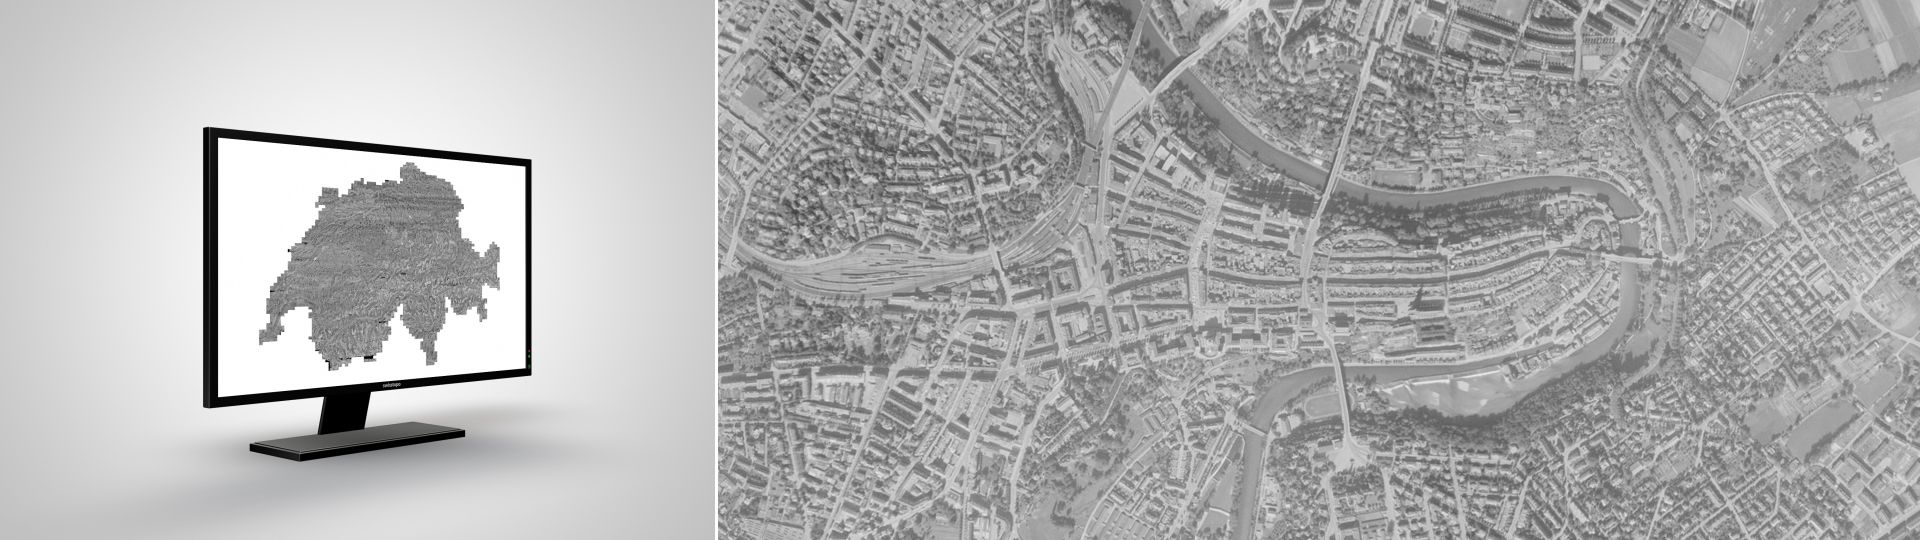 SWISSIMAGE HIST 1946: il mosaico di ortofoto storiche in bianco e nero della Svizzera del 1946